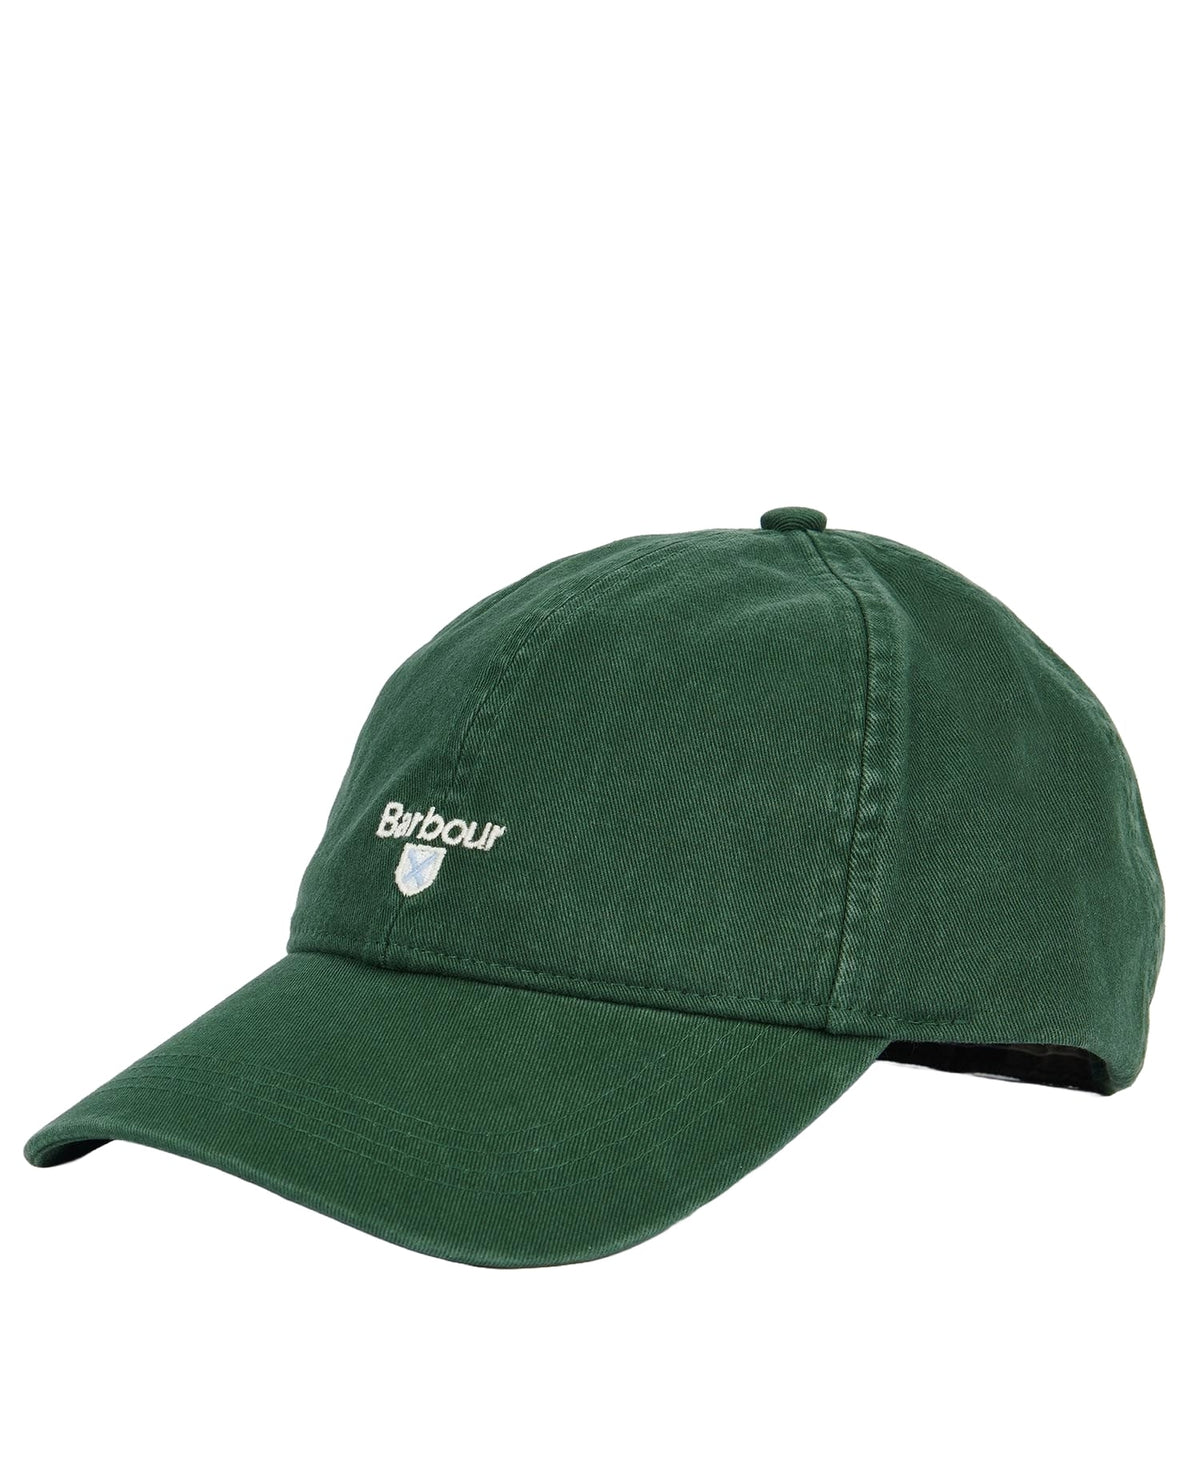 Barbour Green Cascade Sports Cap